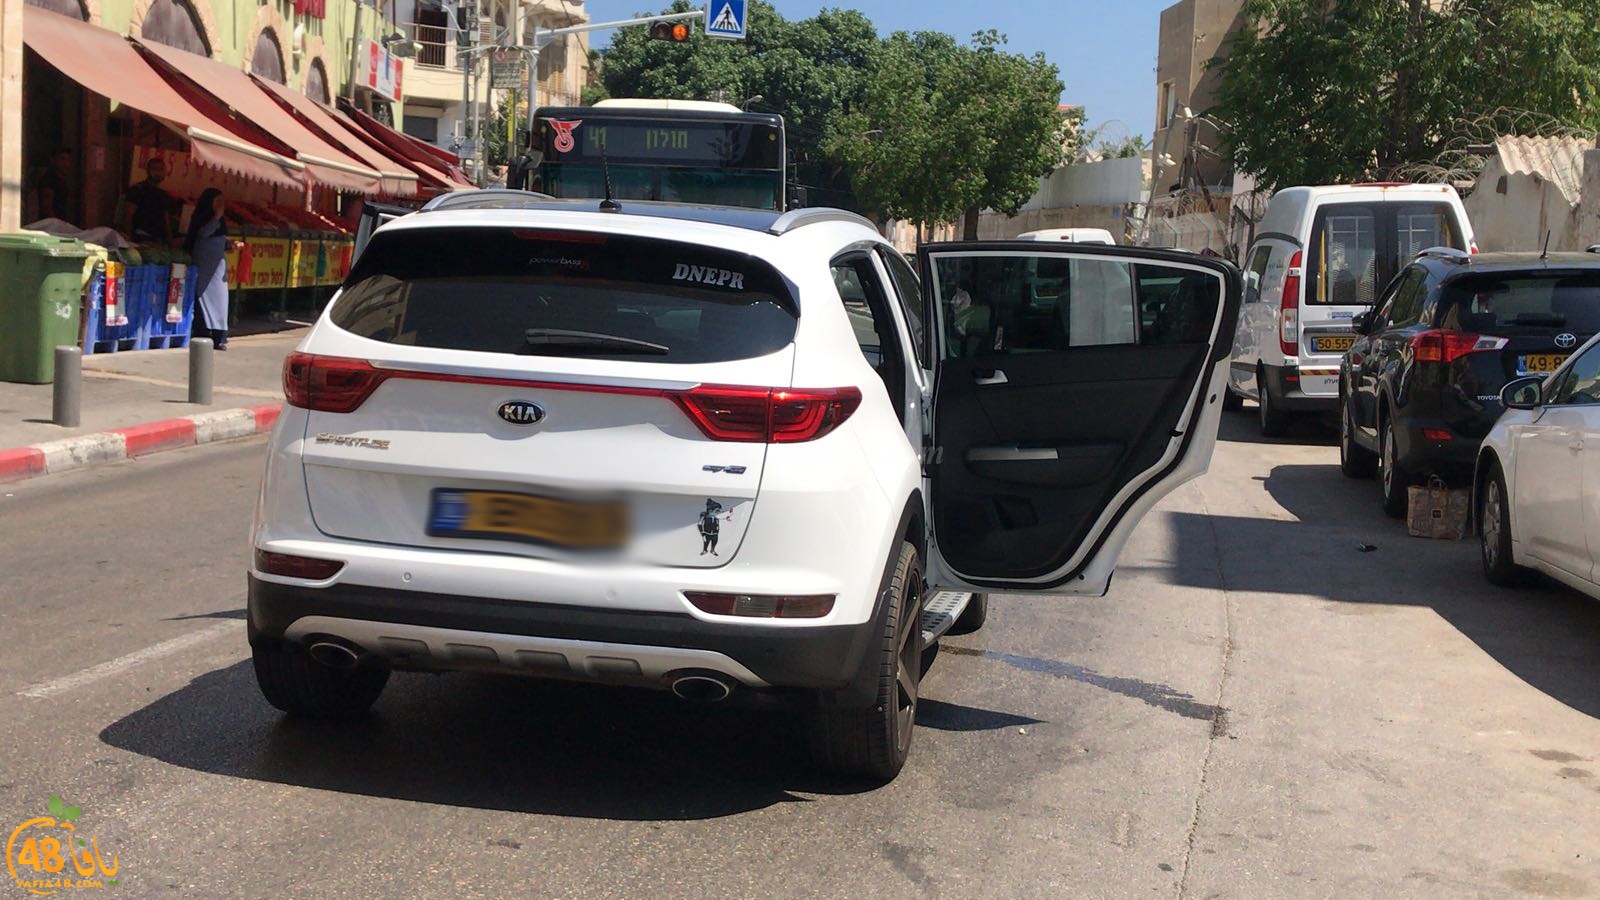  بالصور: حادث طرق بين مركبتين في يافا دون وقوع اصابات 